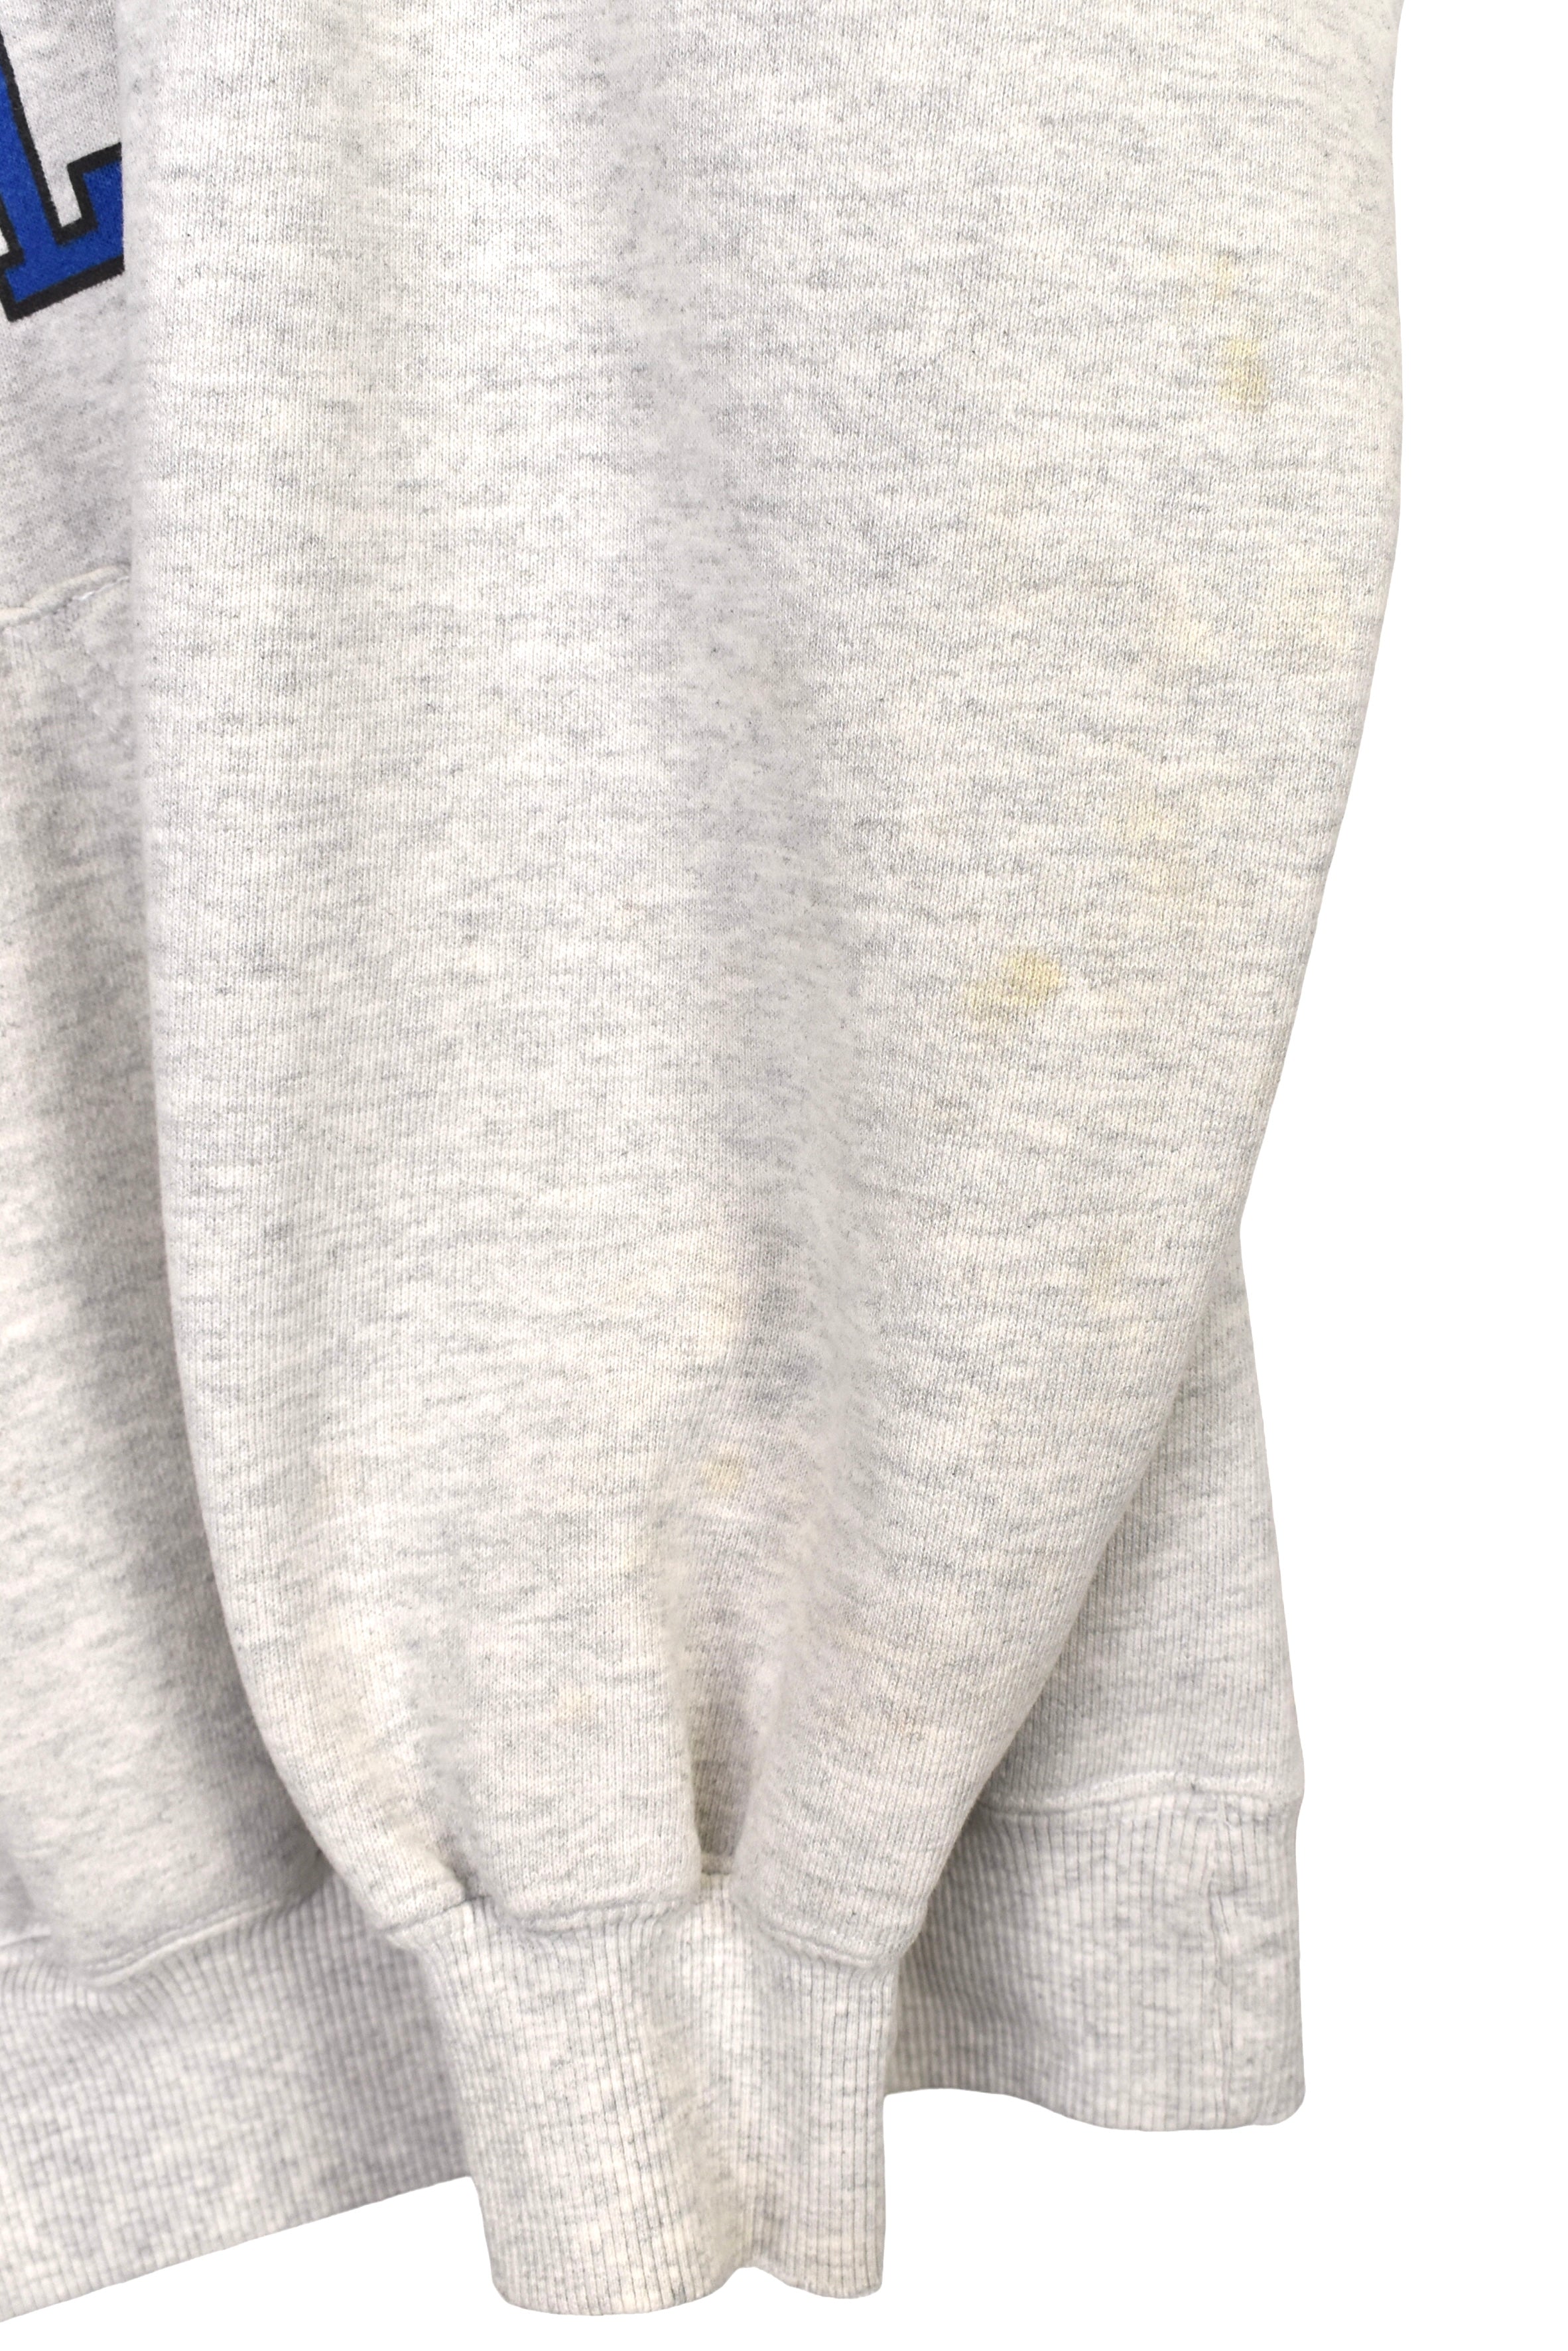 Vintage Reebok hoodie (M), grey graphic sweatshirt